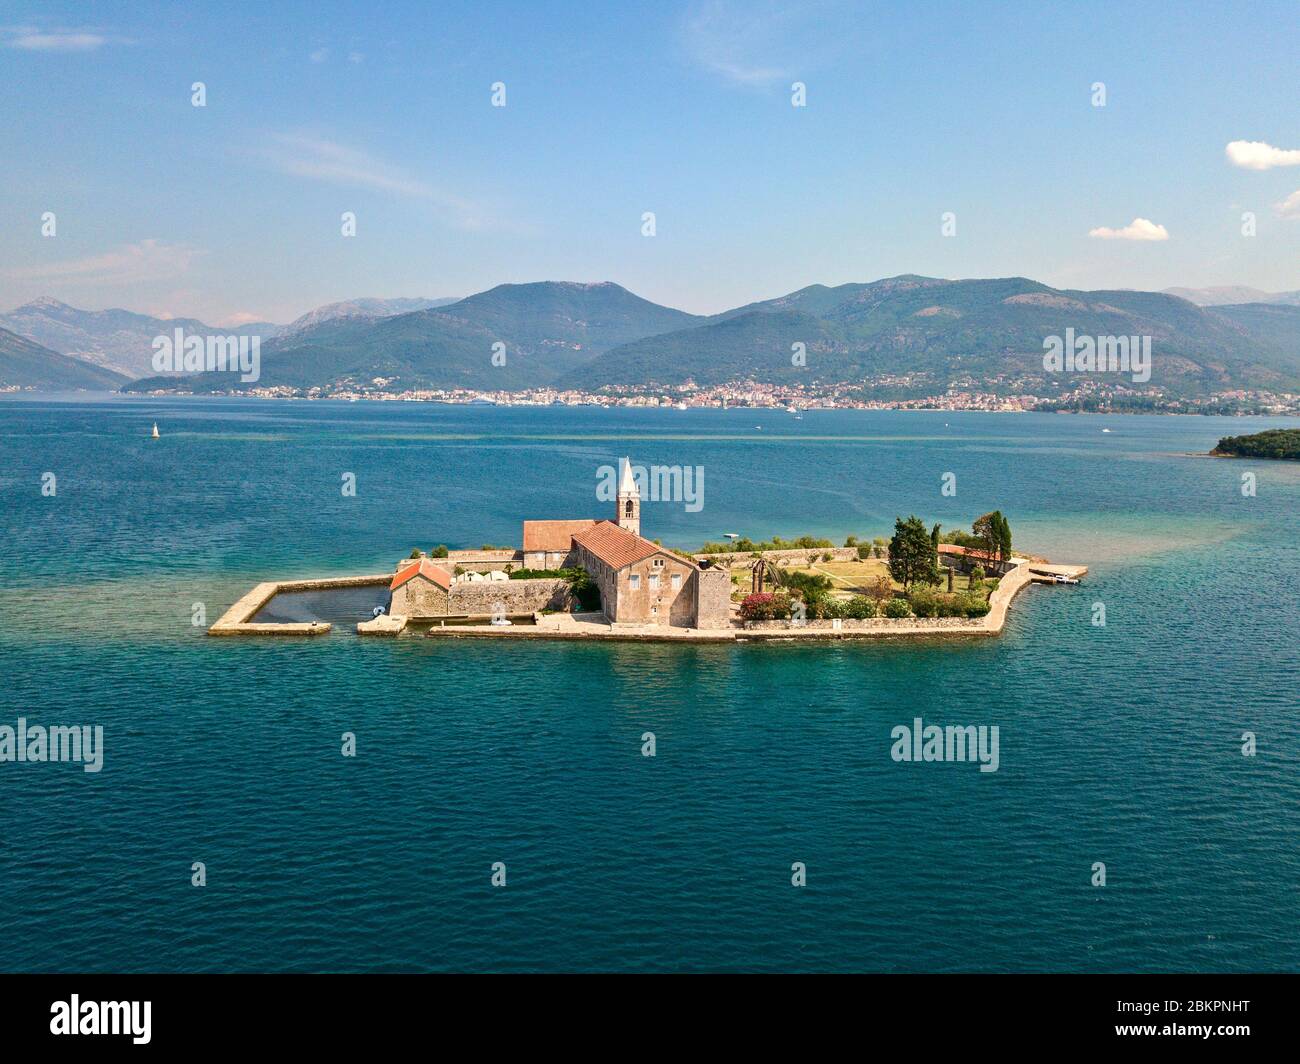 Veduta aerea dell'isola di Notre Dame de la Miséricorde, monastero nella baia di Cattaro vicino all'isola di Sveti Marko, Montenegro. Ostrvo Gospa Foto Stock